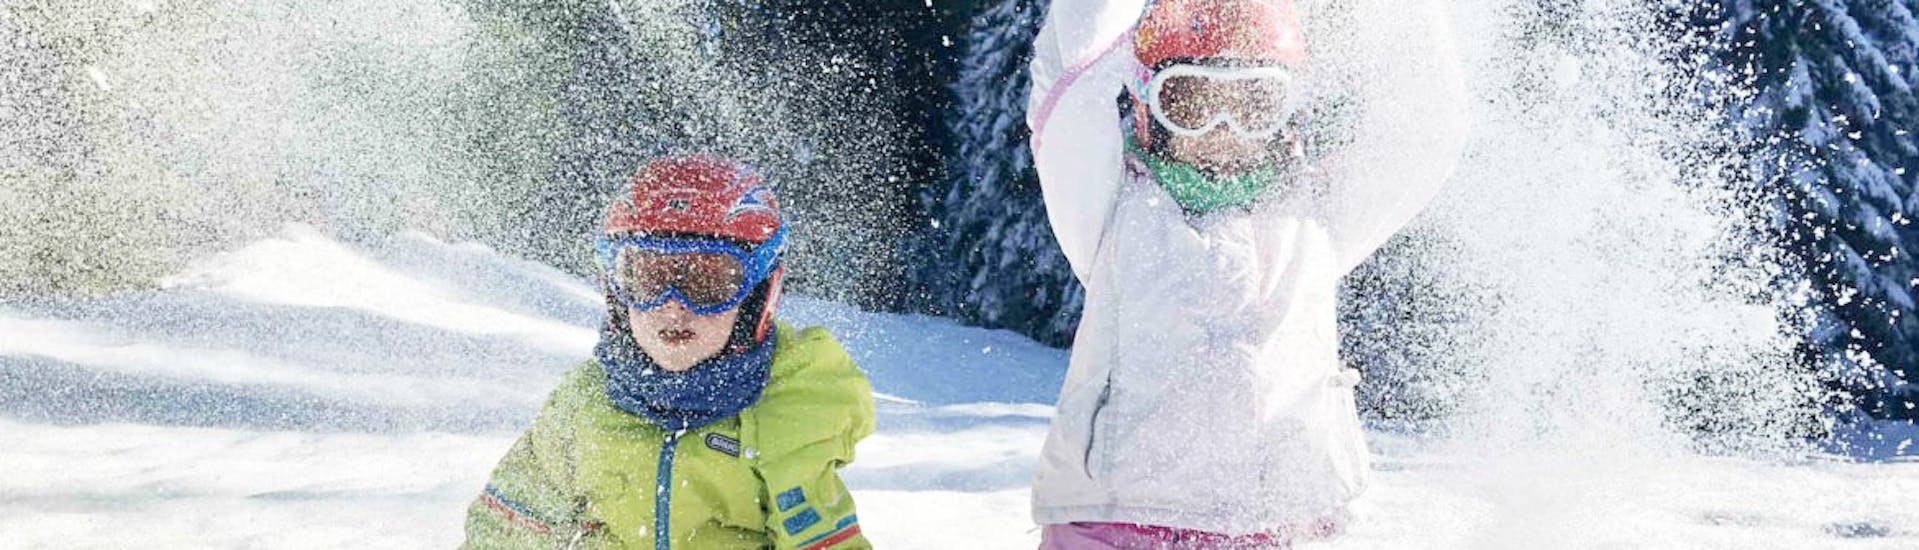 Cours de ski Enfants dès 5 ans - Expérimentés.